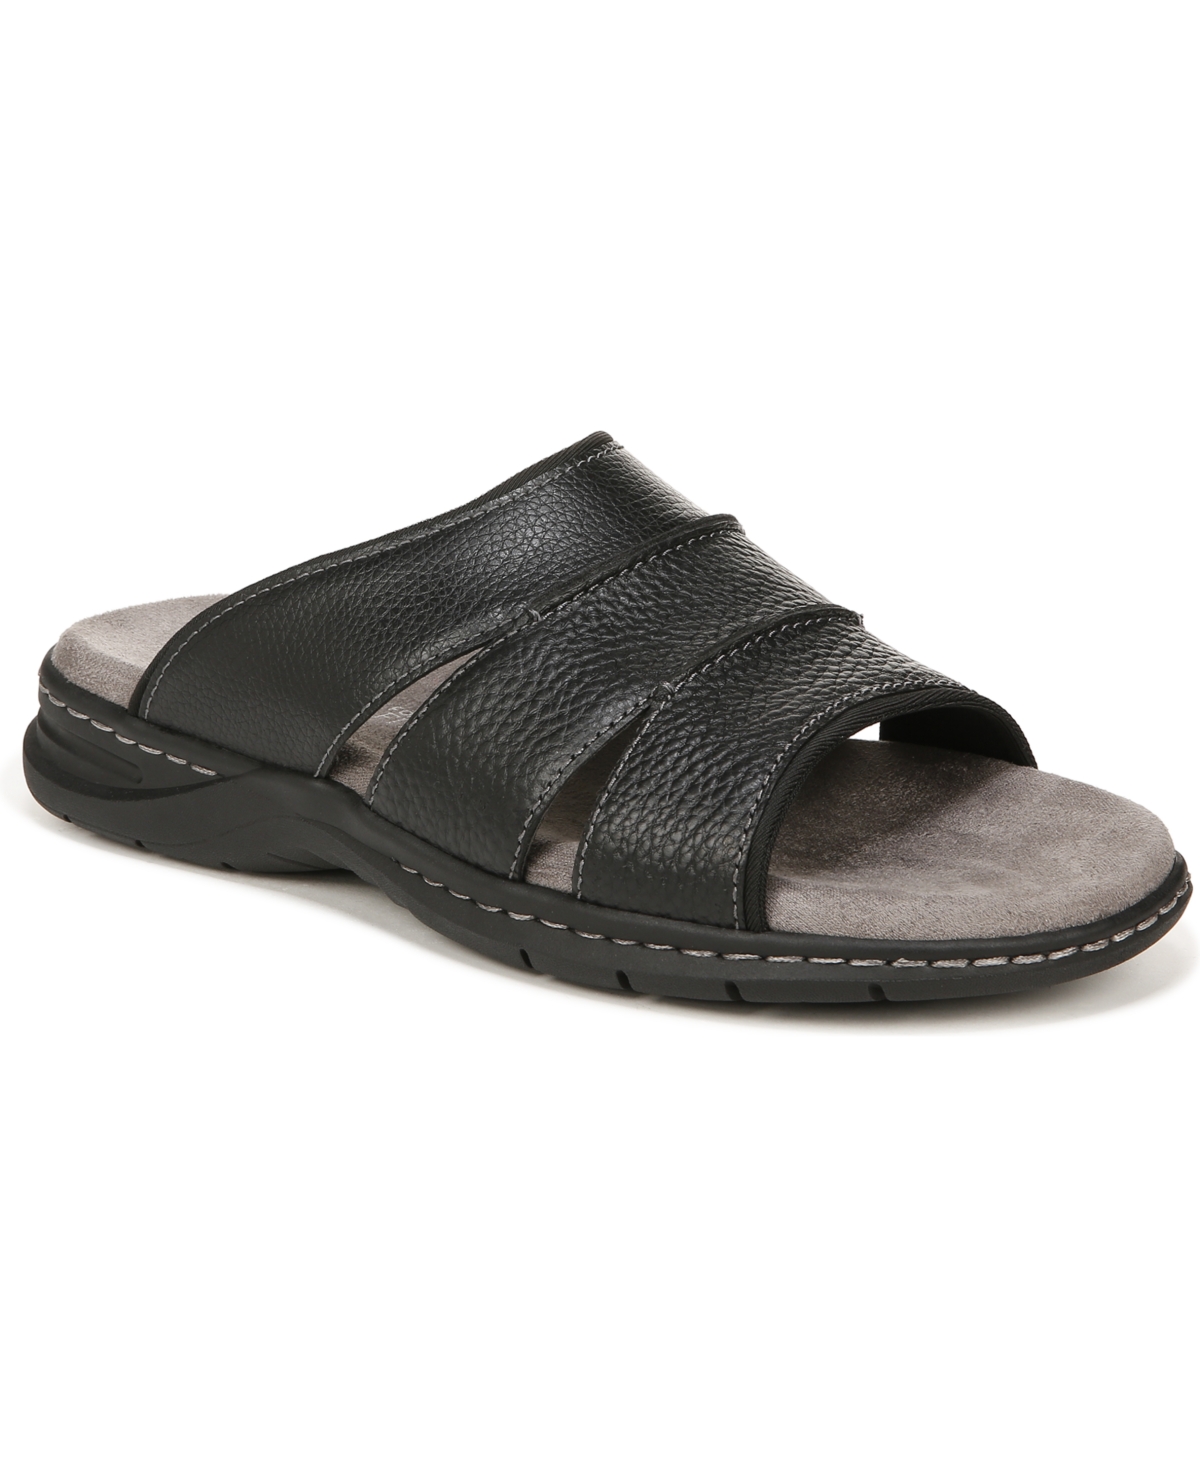 Men's Gordon Slide Sandals - Black